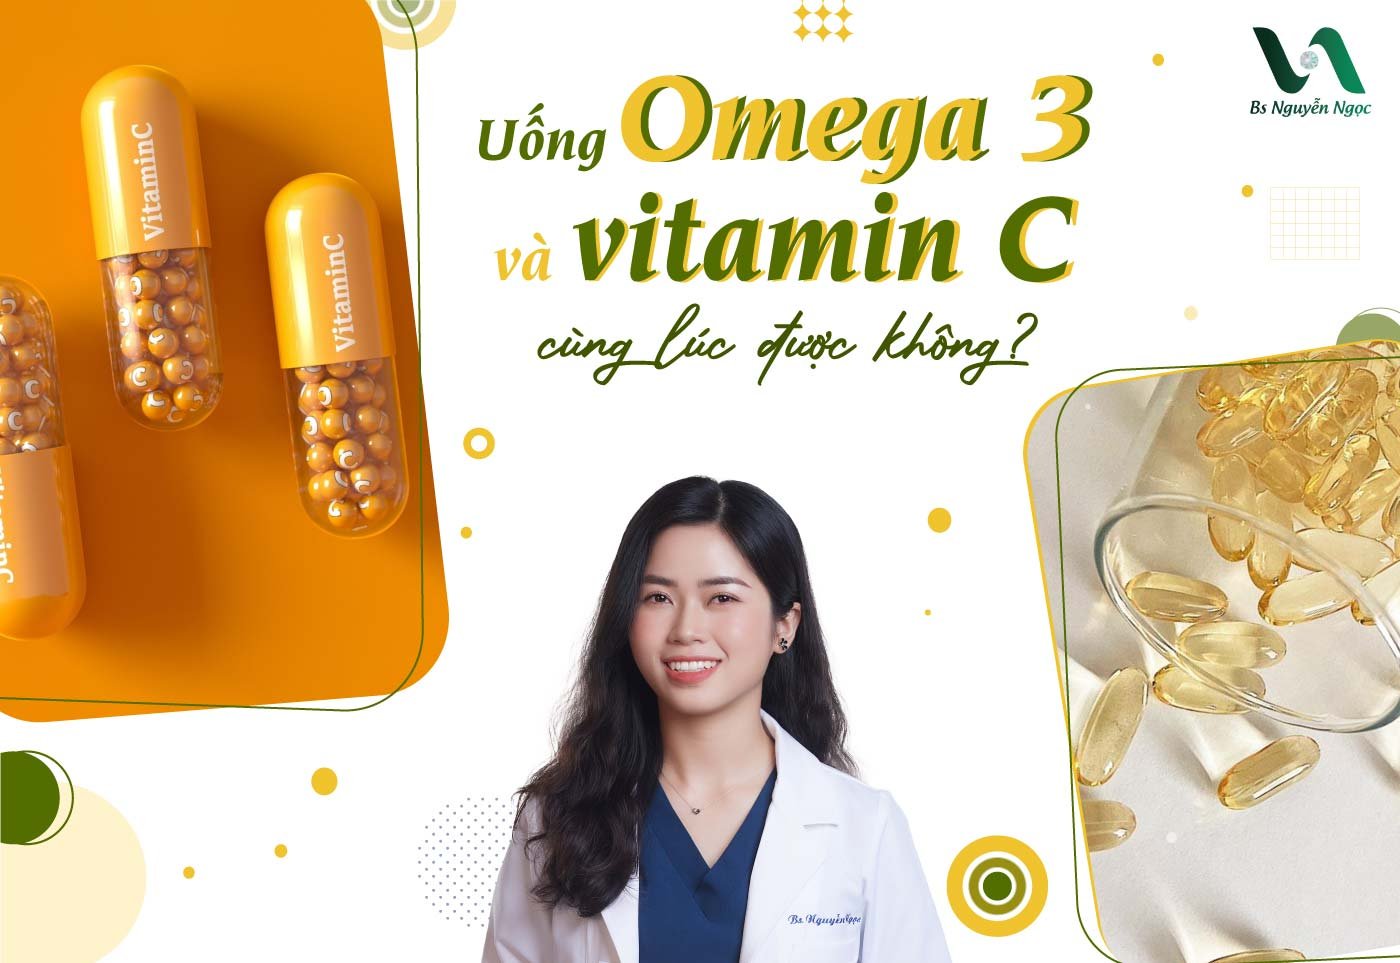 Uống Omega 3 và vitamin C cùng lúc được không?